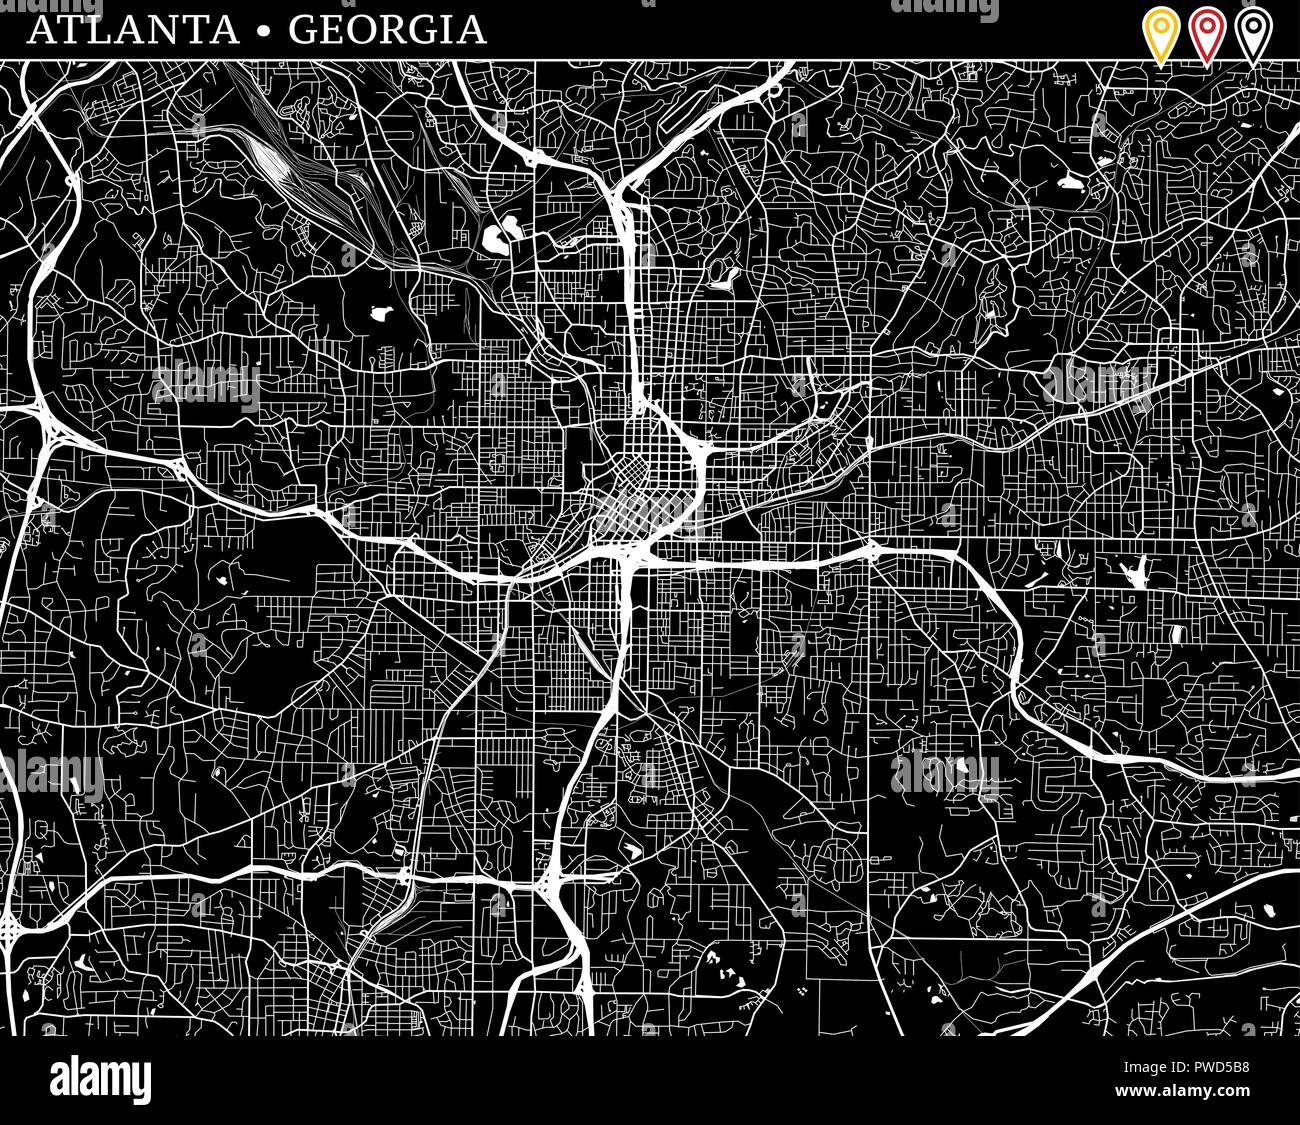 Einfache Karte von Atlanta, Georgia, USA. Schwarze und weiße Version für saubere Hintergründe und druckt. Diese Karte von Atlanta enthält drei Markierungen, die Grou Stock Vektor